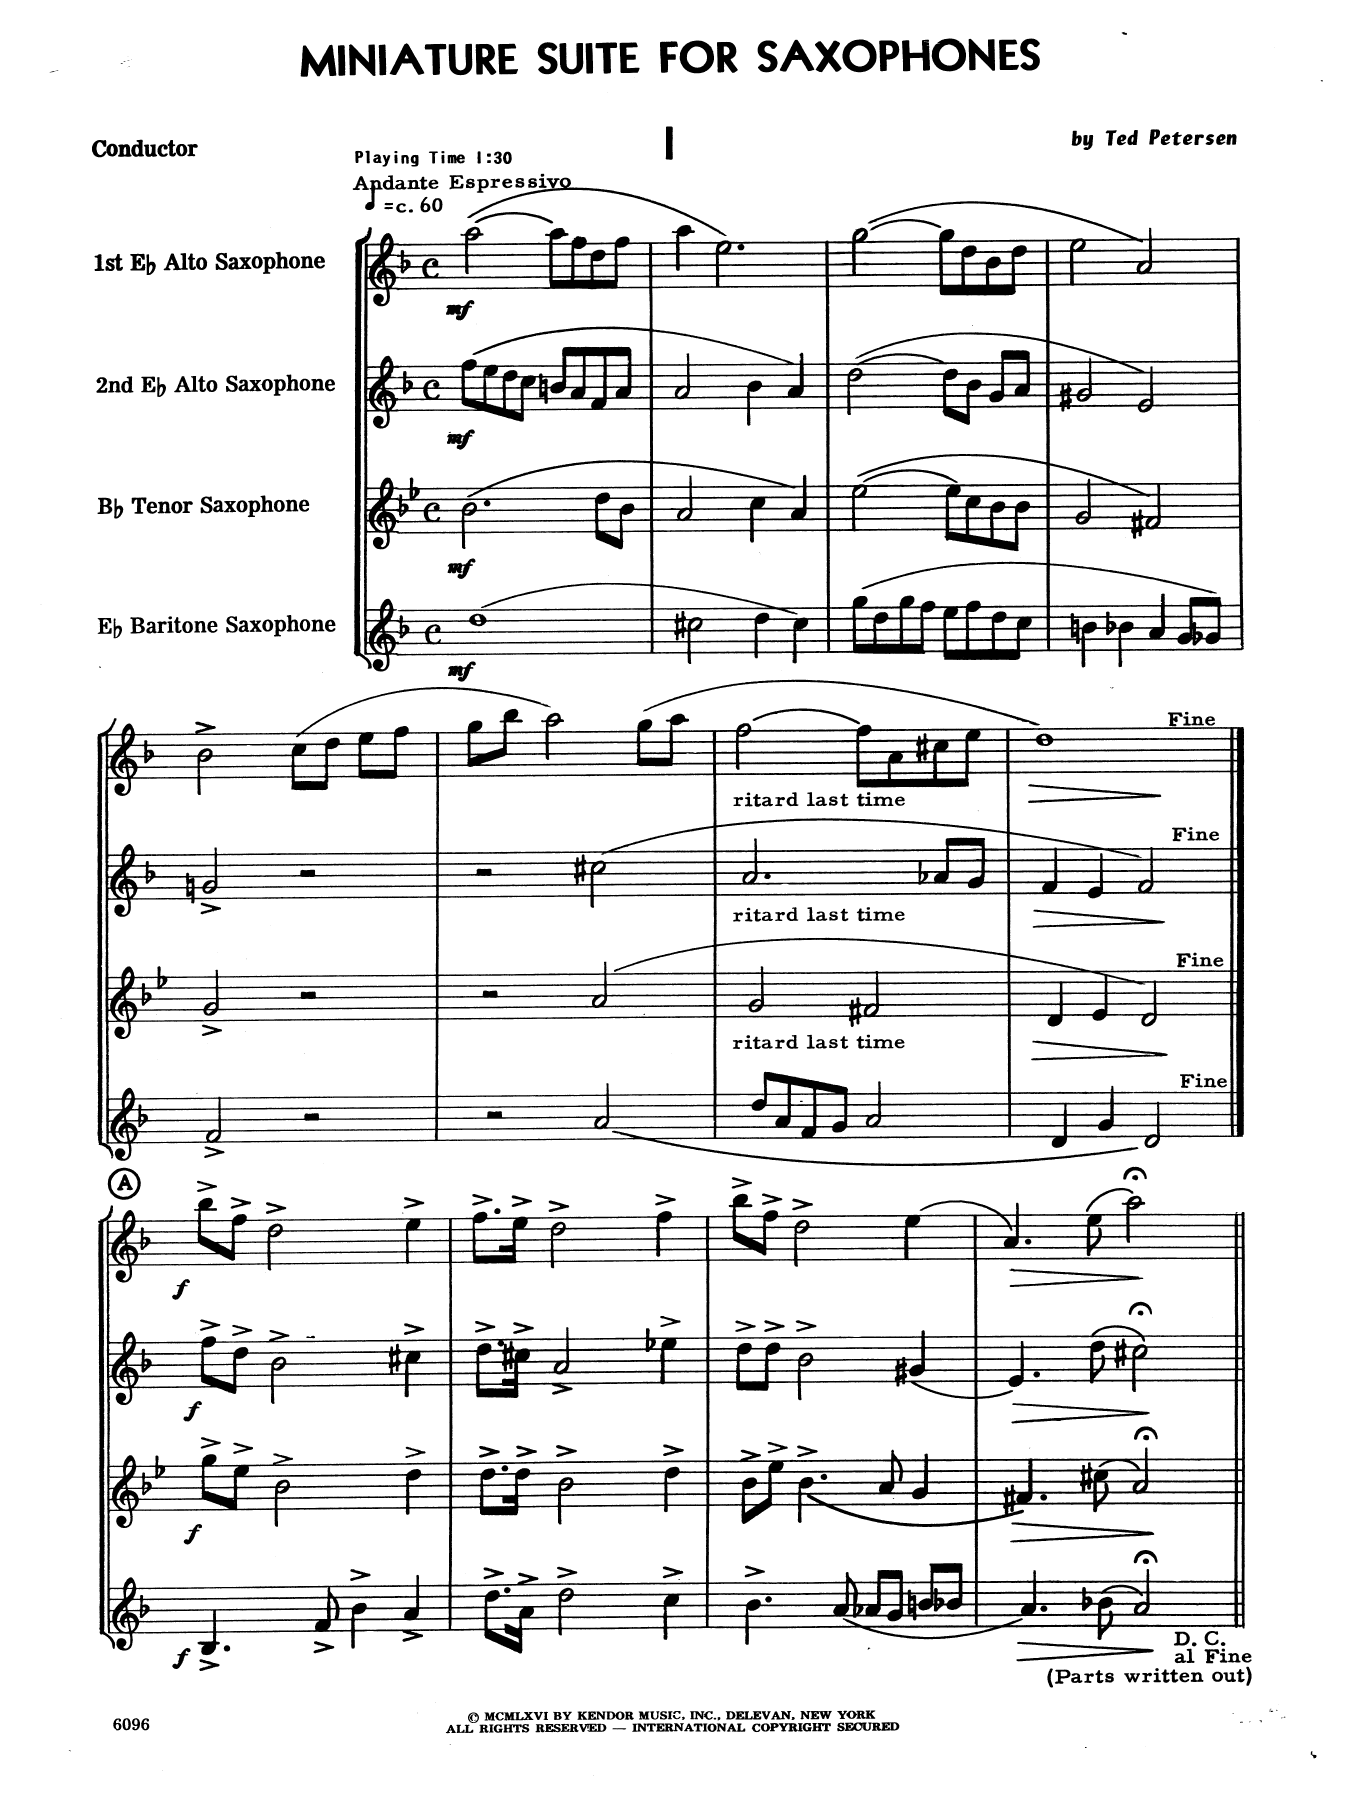 Miniature Suite for Saxophones - Full Score (Woodwind Ensemble) von Ted Petersen